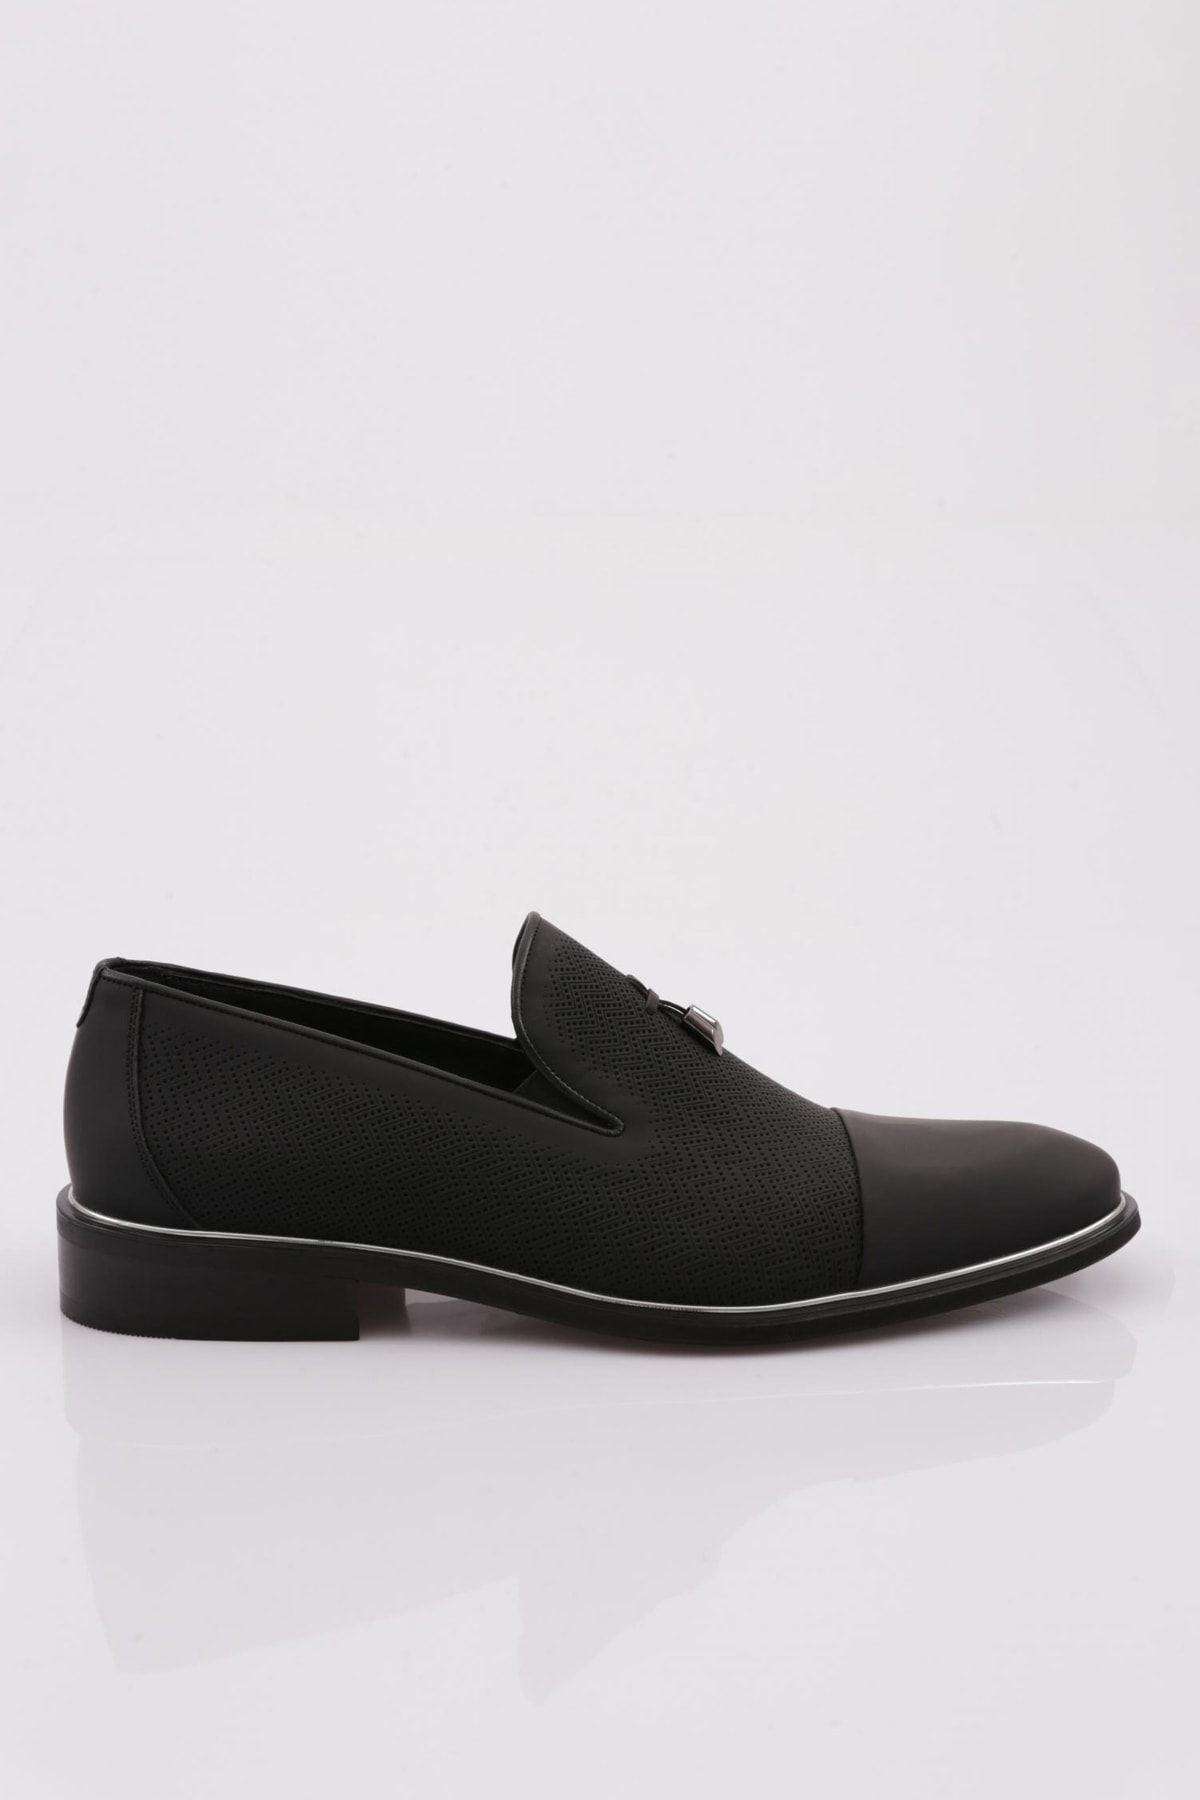 Dgn 2543-22k Erkek Kauçuk Taban Microliht Klasik Ayakkabı Siyah Tafta